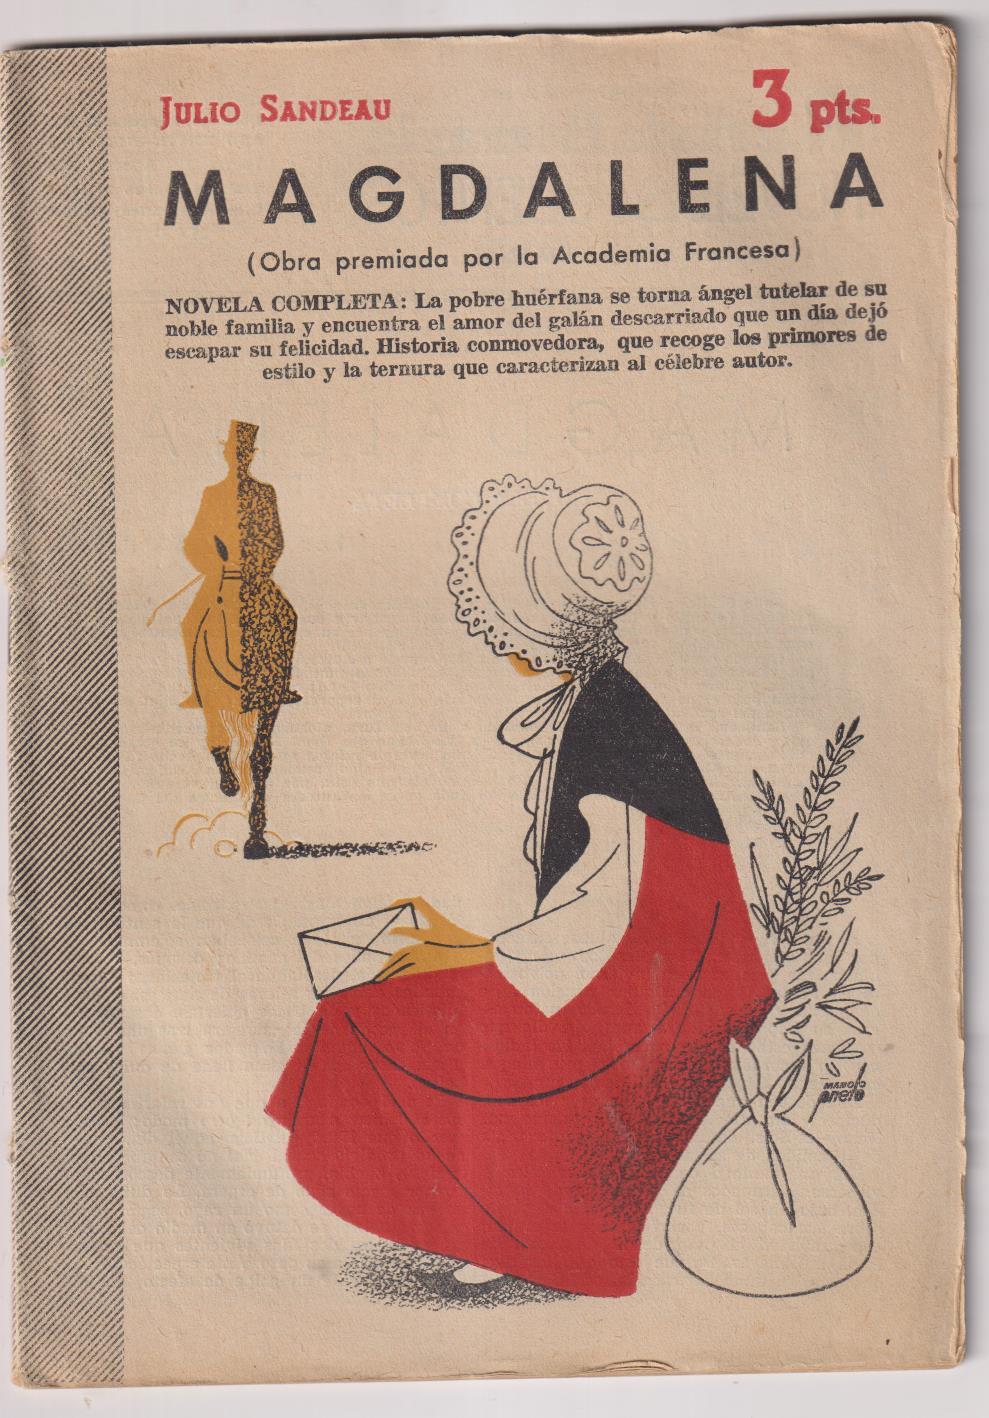 Revista Literaria Novelas y Cuentos nº 1266. Magdalena por Julio Sandeau, Año 1955